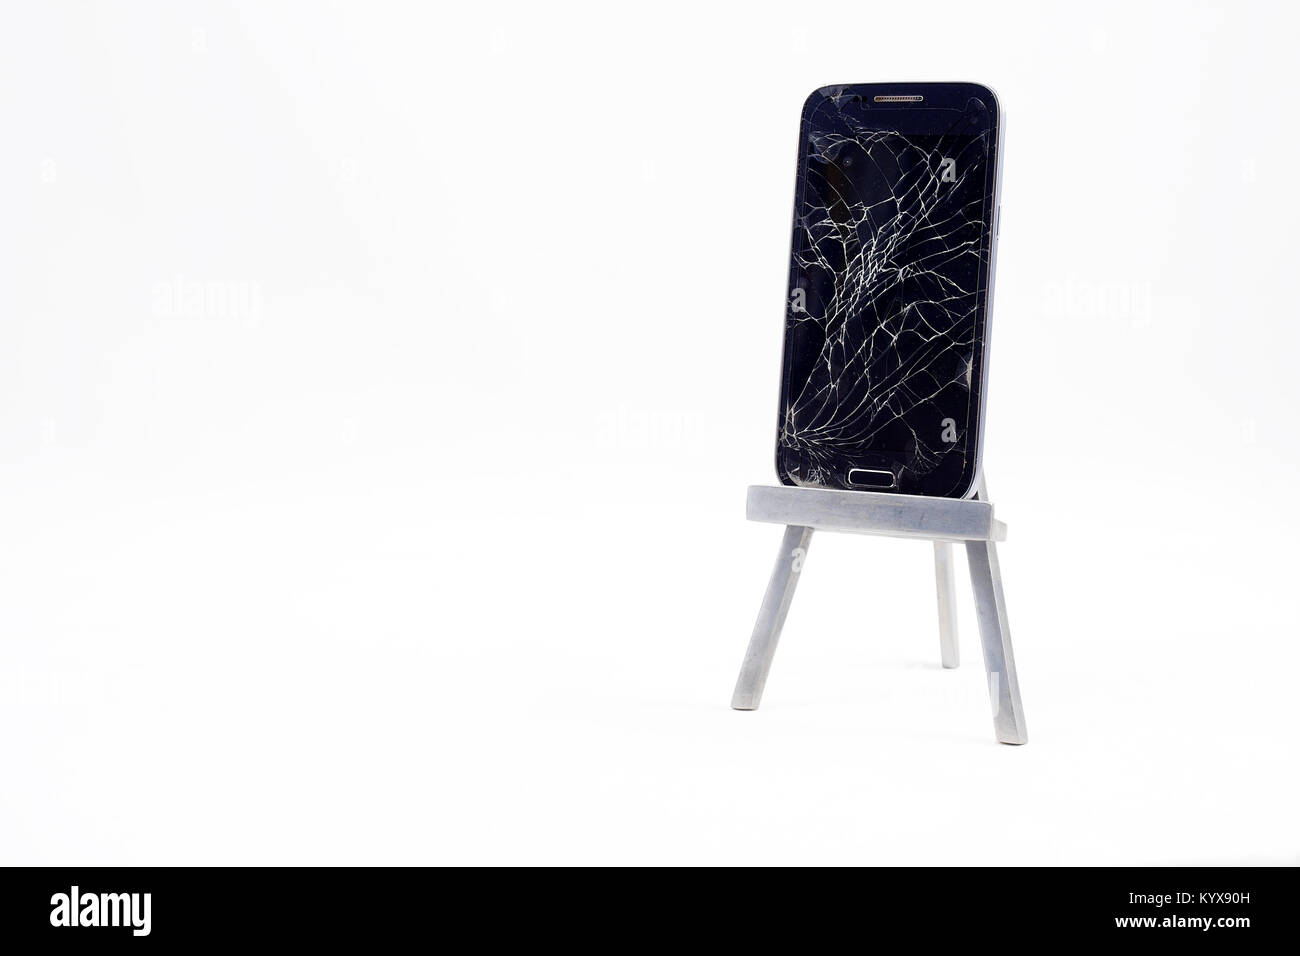 Ein Handy mit dem Display gebrochen/verkratzt. Insgesamt weißen Hintergrund. Stockfoto